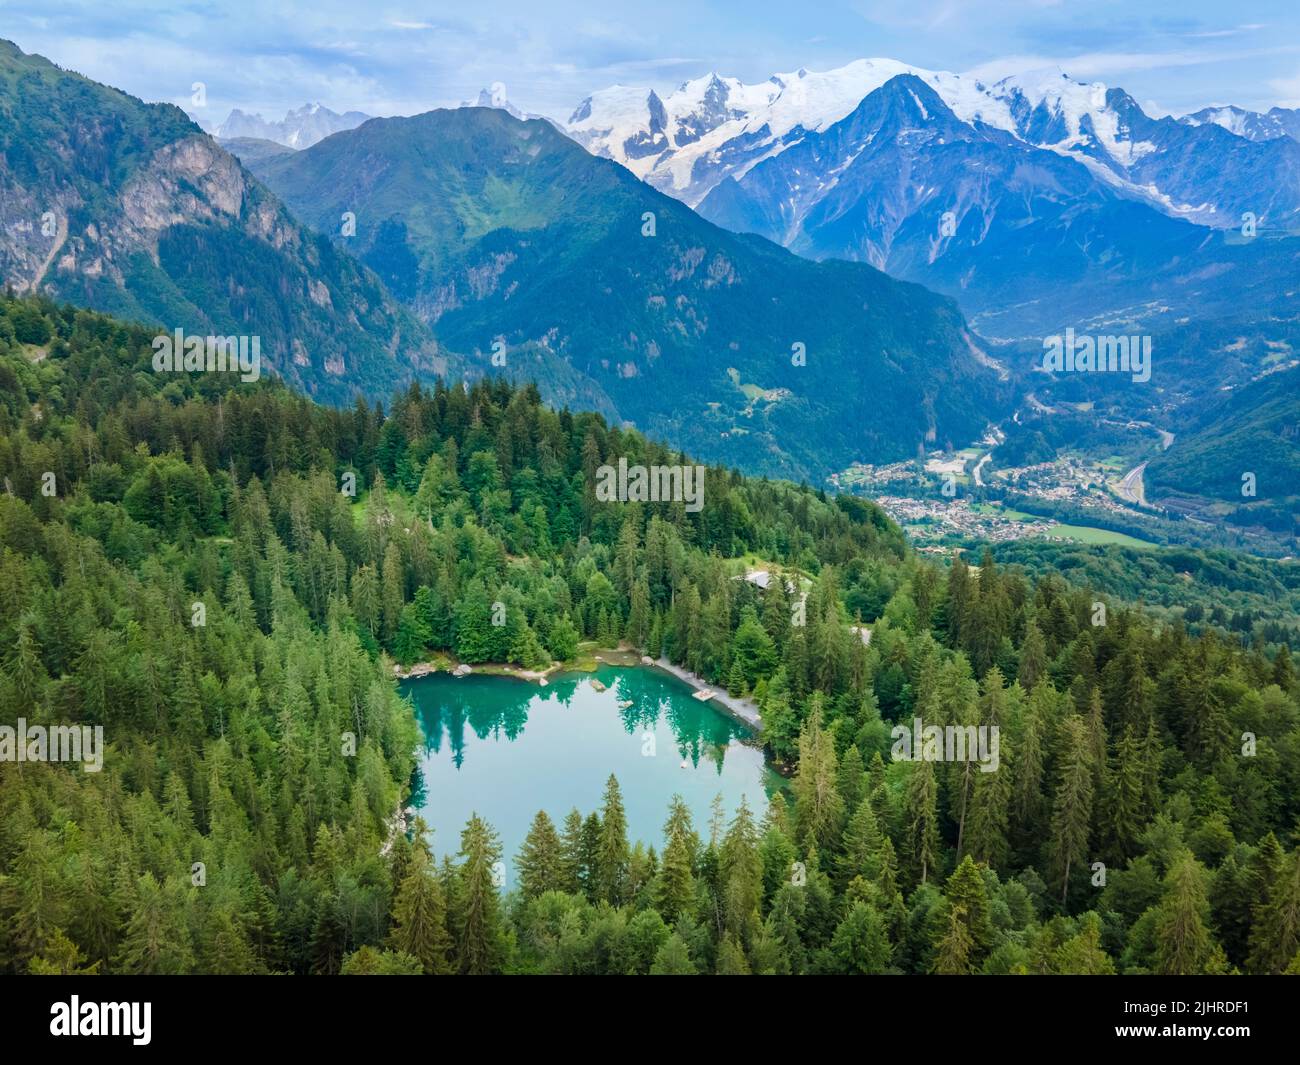 Blick auf den Mont Blanc und den Lac Vert in den Alpen bei Chamonix, Frankreich. Sommer Französische alpine Landschaft mit Tannenwald, See und grünem Tal. Stockfoto